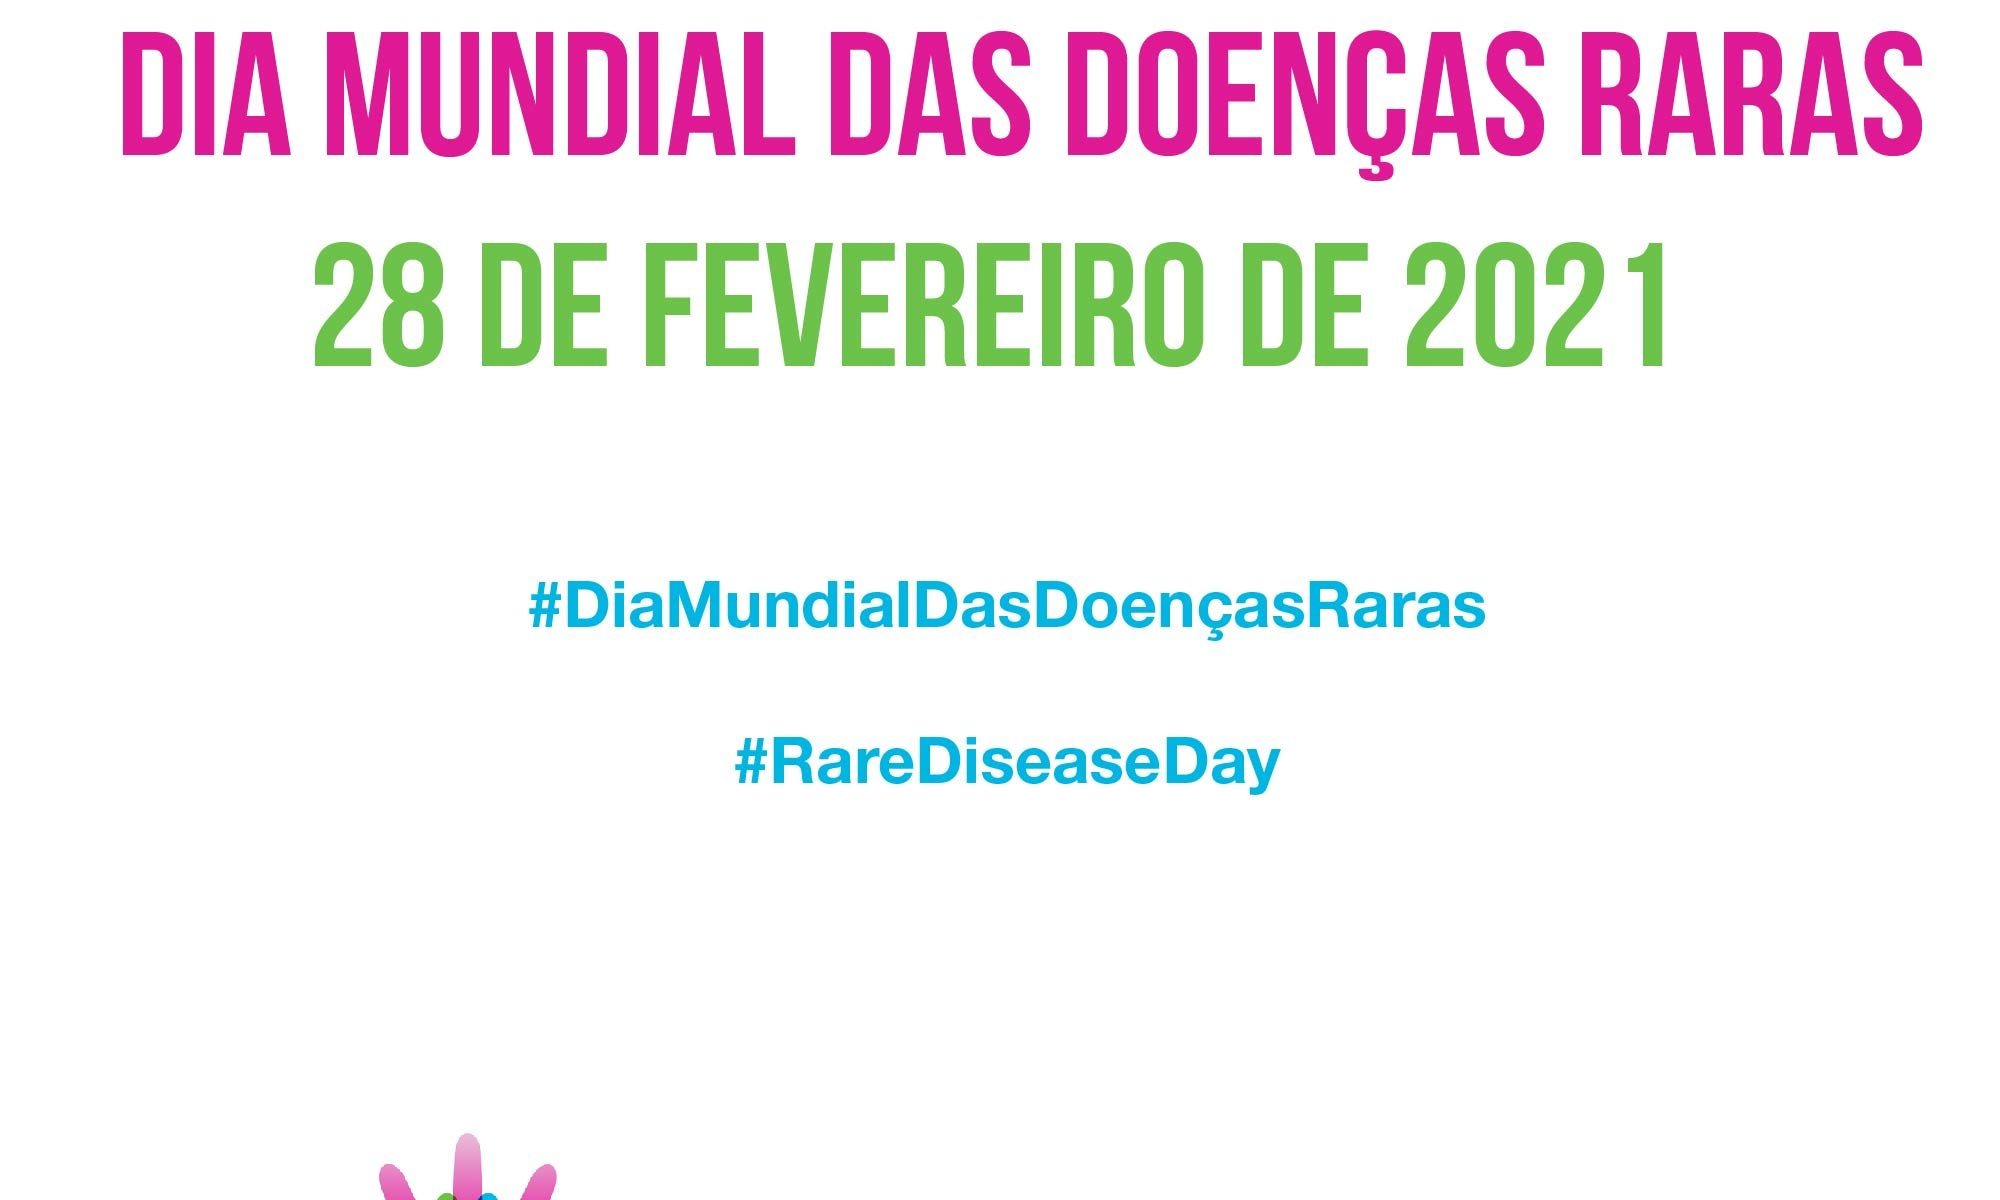 imagem de fundo claro está escrito "Nós apoiamos o Dia Mundial das Doeças Raras 28 de fevereiro de 2021" e há as logos do Dia Mundial das Doenças Raras e da Retina Brasil